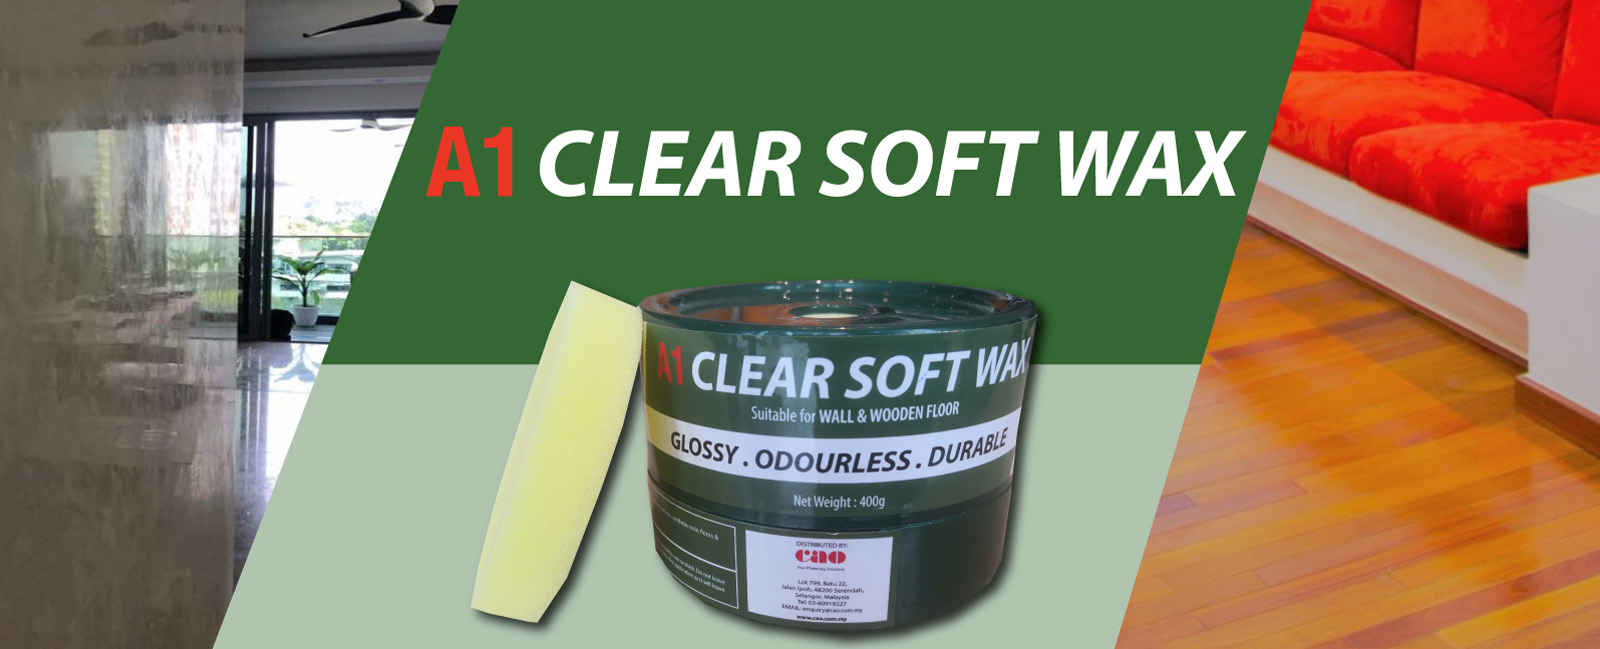 a1 clear soft wax